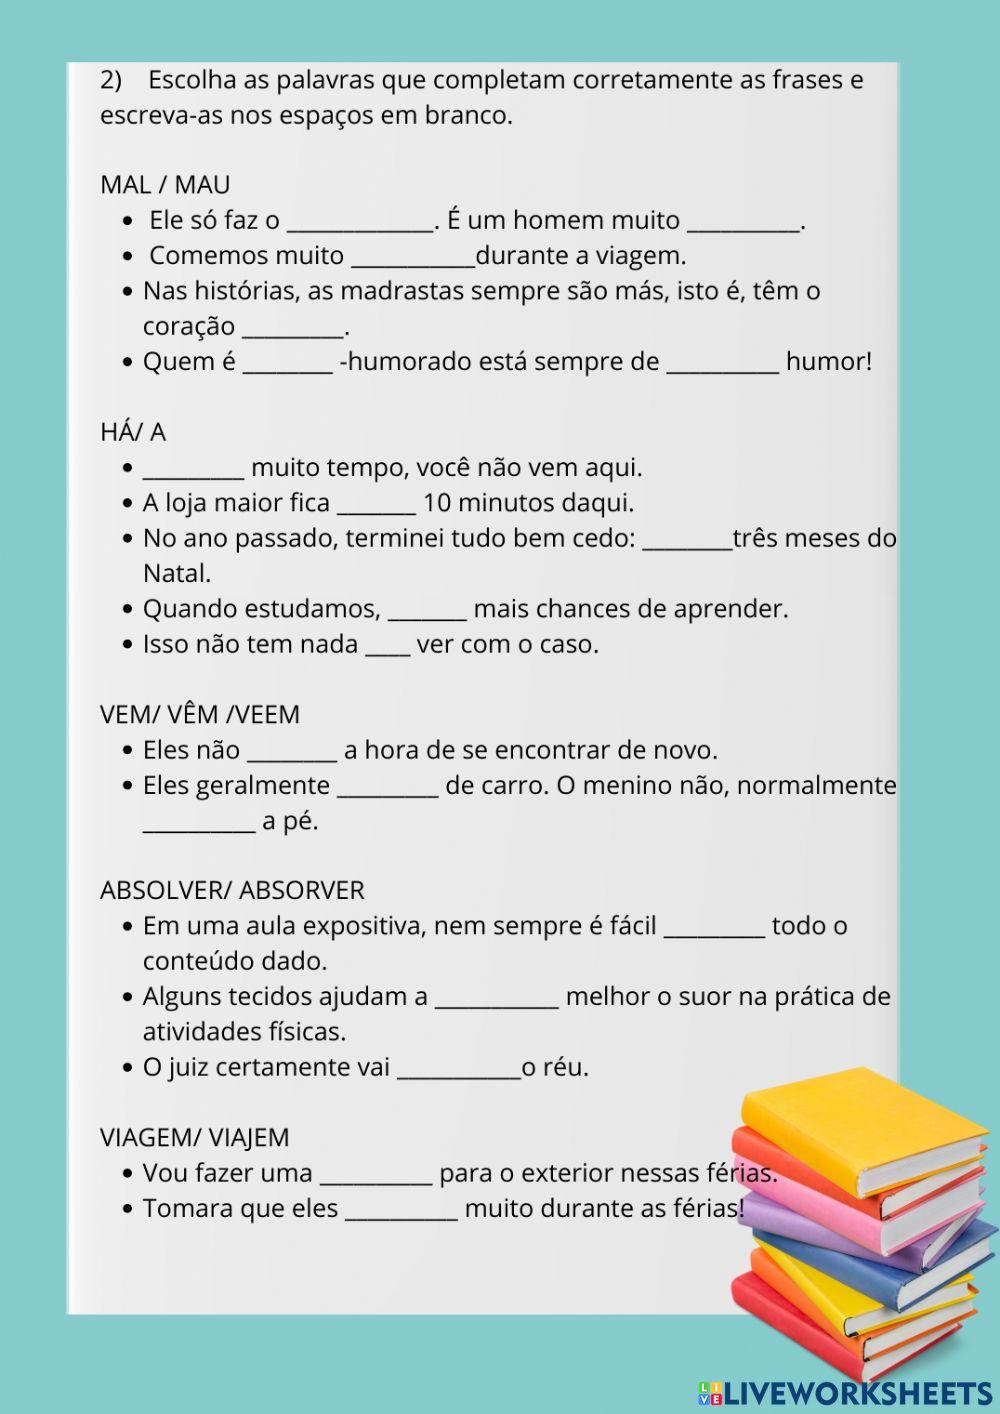 Erros comuns em língua portuguesa